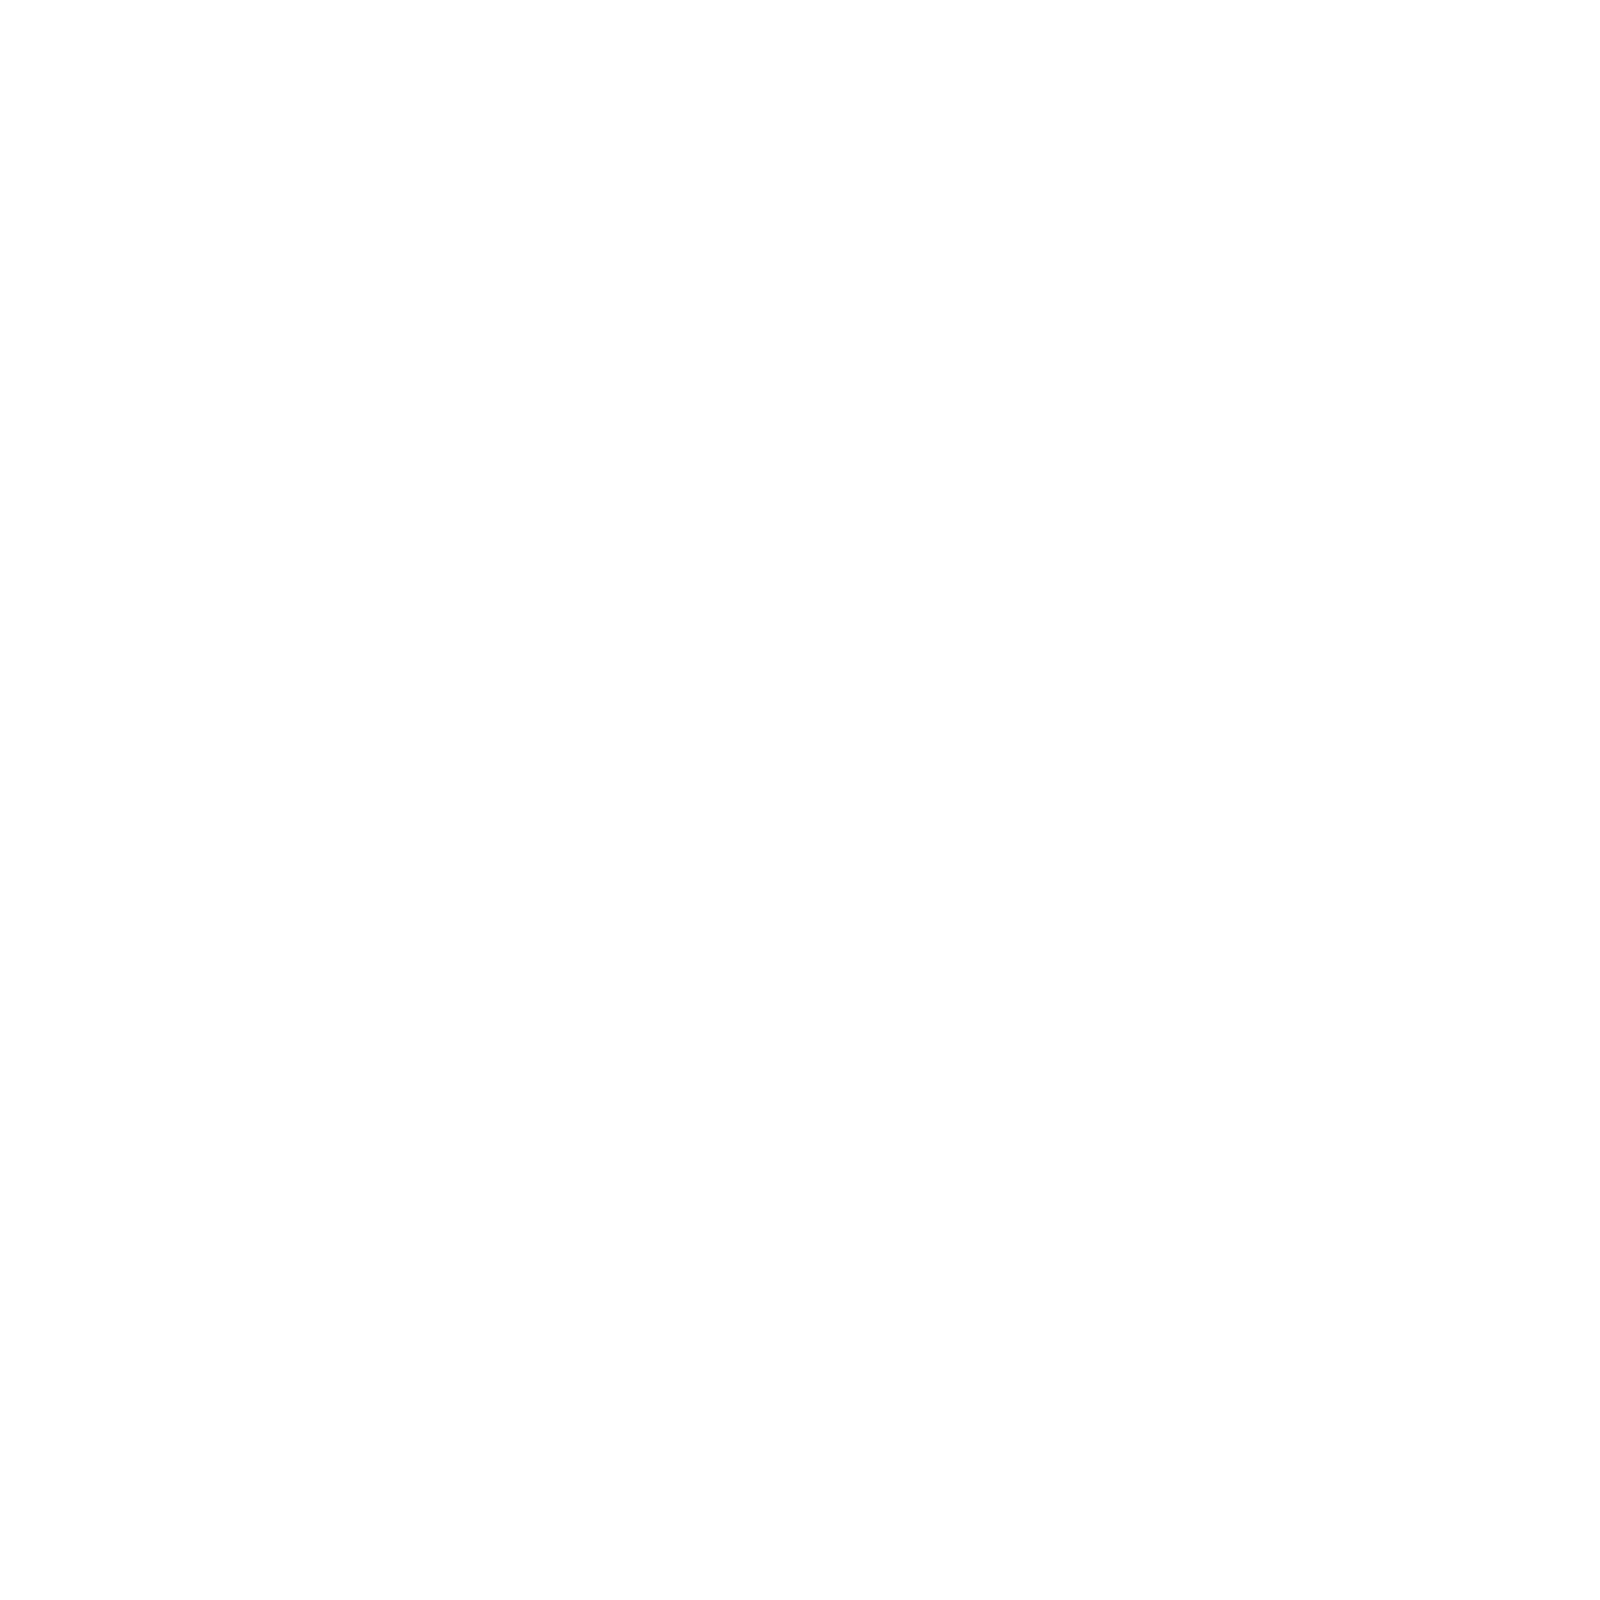 grafika - płatek śniegu przedstawiający technologię chłodzącą w pokrowcugrafika - płatek śniegu przedstawiający technologię chłodzącą w pokrowcu